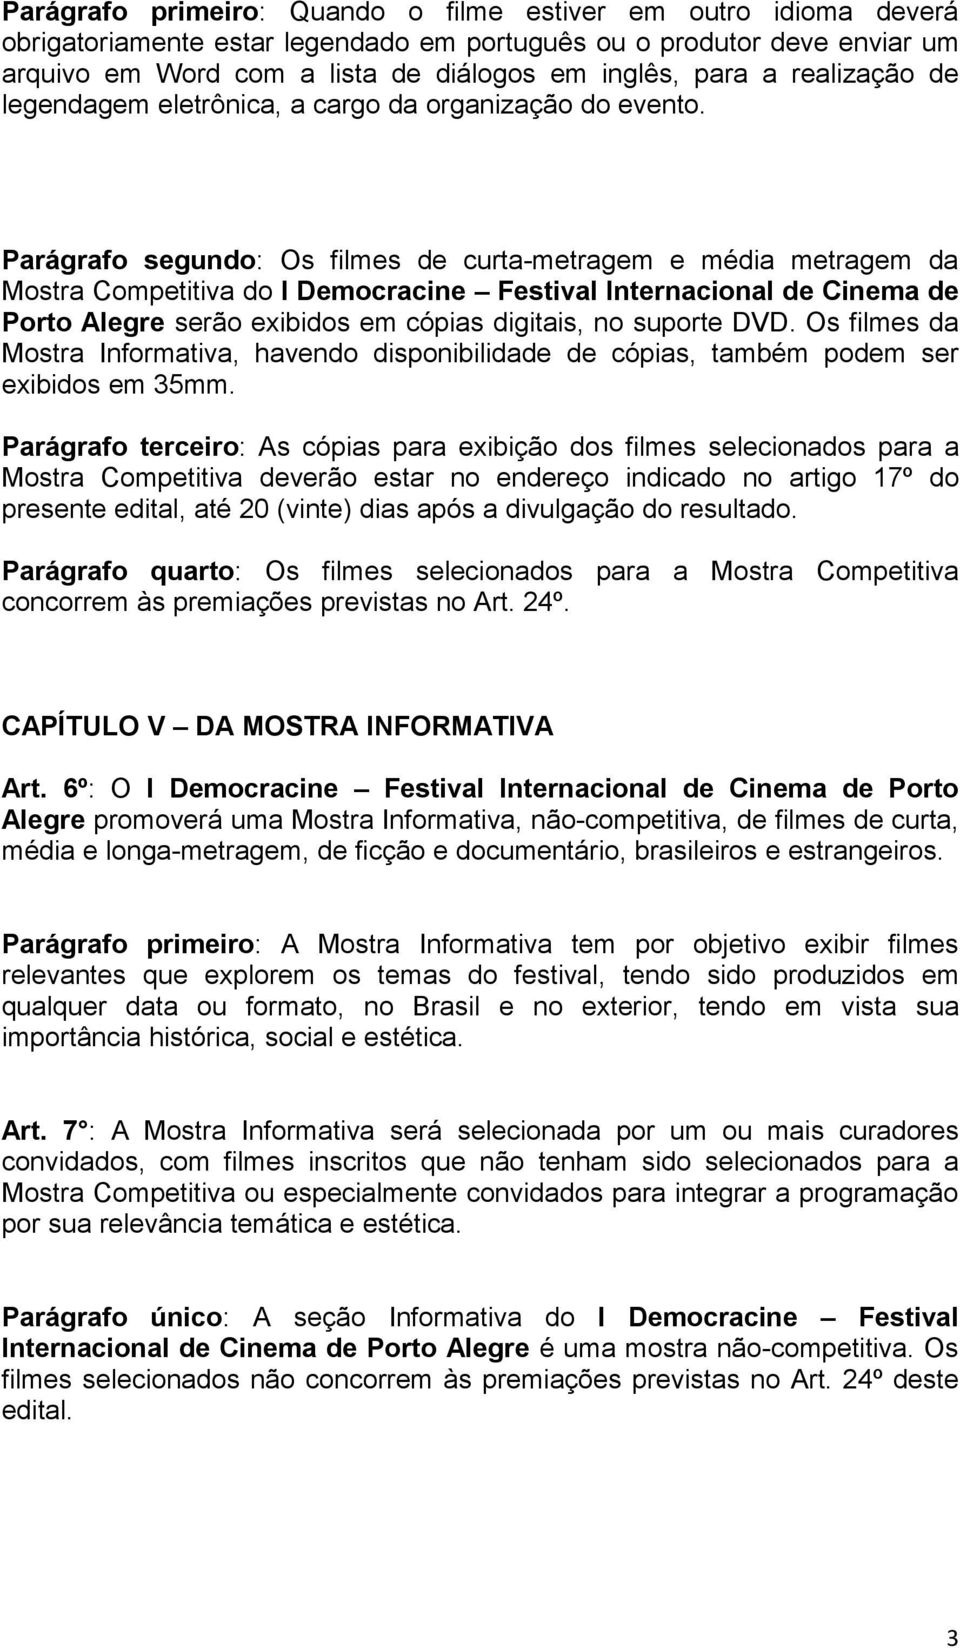 Parágrafo segundo: Os filmes de curta-metragem e média metragem da Mostra Competitiva do I Democracine Festival Internacional de Cinema de Porto Alegre serão exibidos em cópias digitais, no suporte